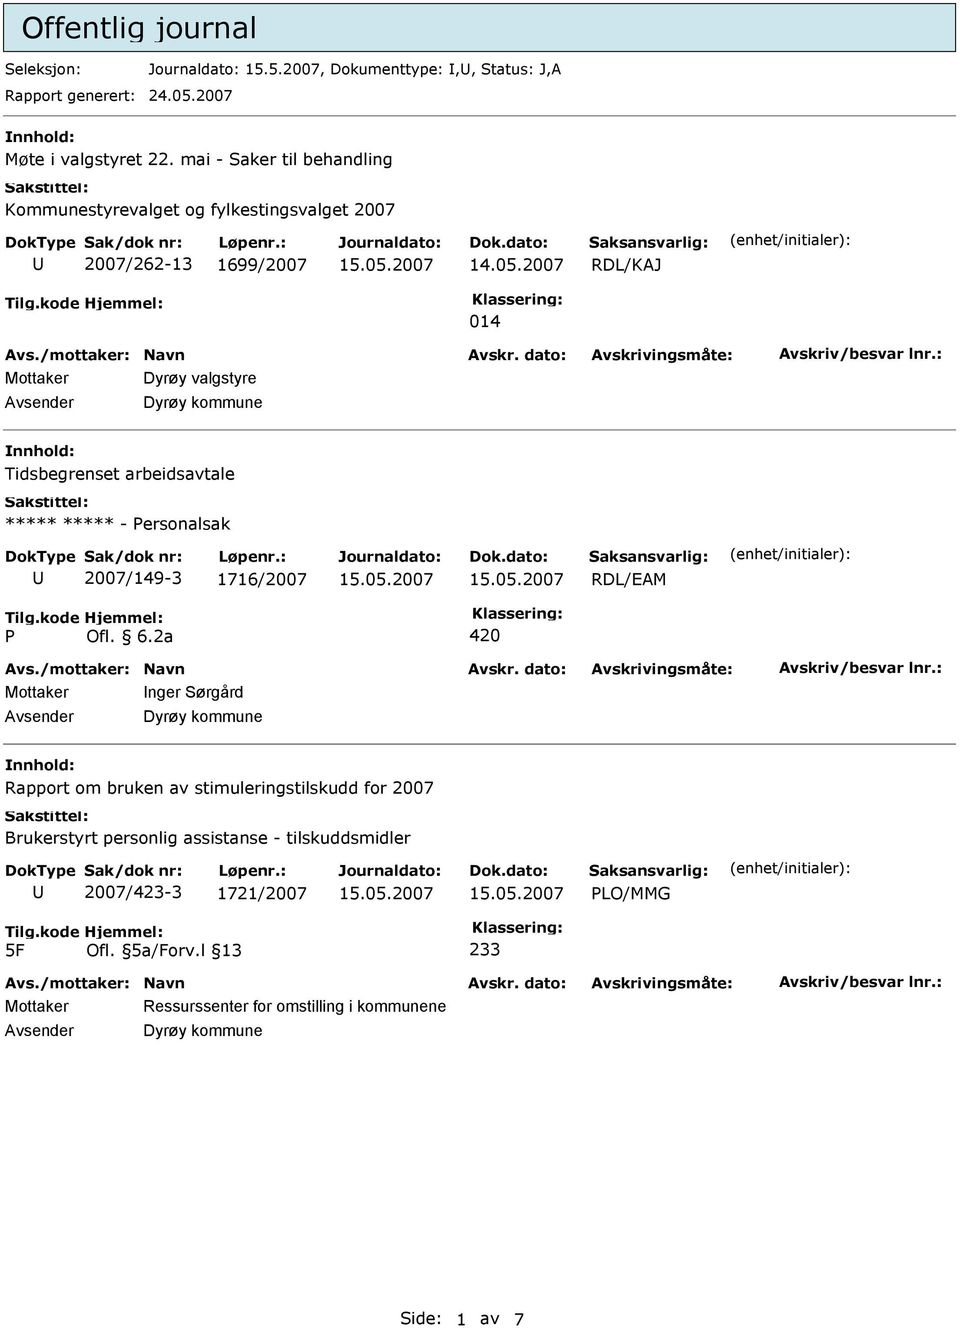 Tidsbegrenset arbeidsavtale ***** ***** - ersonalsak 2007/149-3 1716/2007 Mottaker nger Sørgård Dyrøy kommune nnhold: Rapport om bruken av